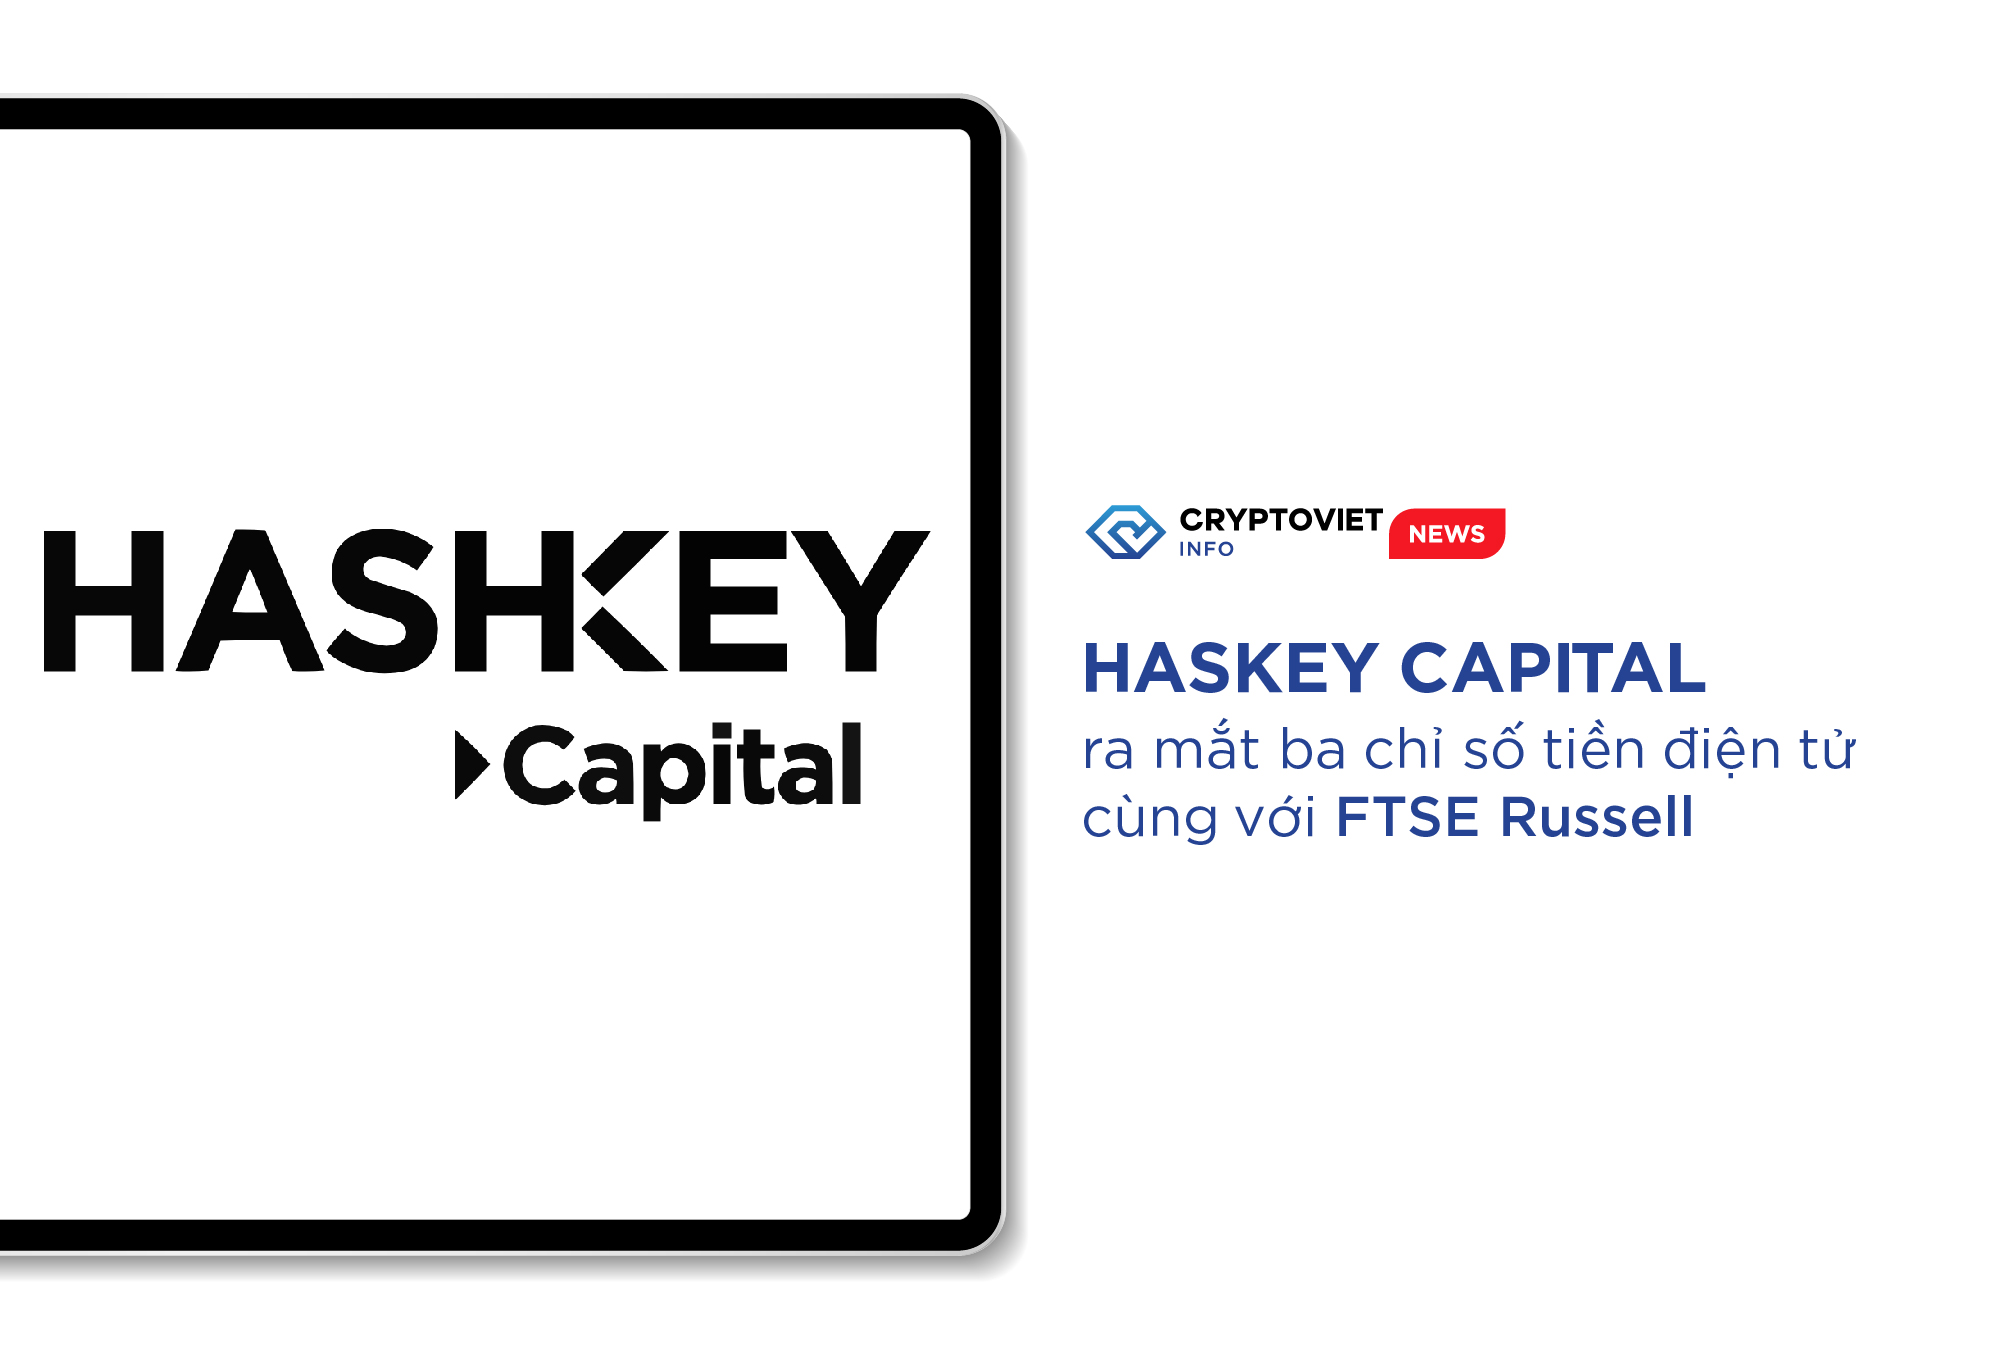 HashKey Capital ra mắt ba chỉ số tiền điện tử cùng với FTSE Russell